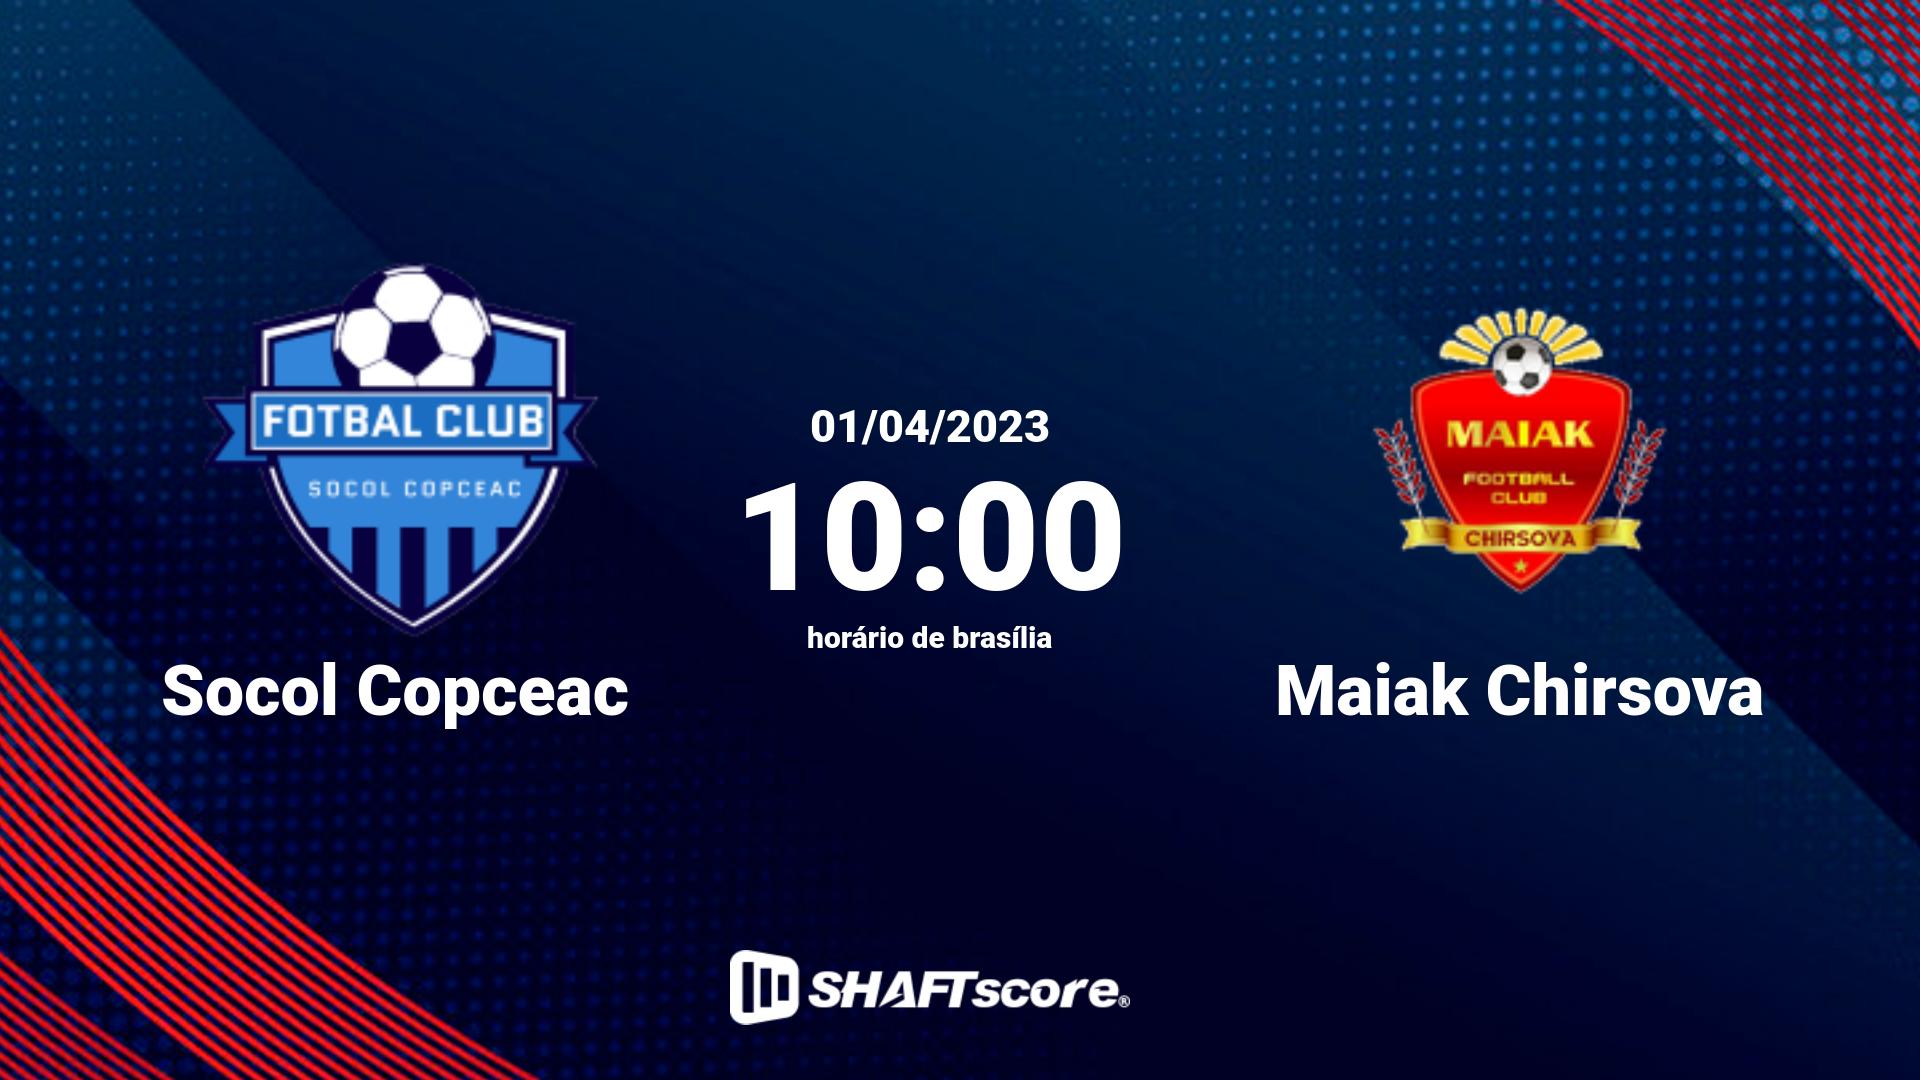 Estatísticas do jogo Socol Copceac vs Maiak Chirsova 01.04 10:00